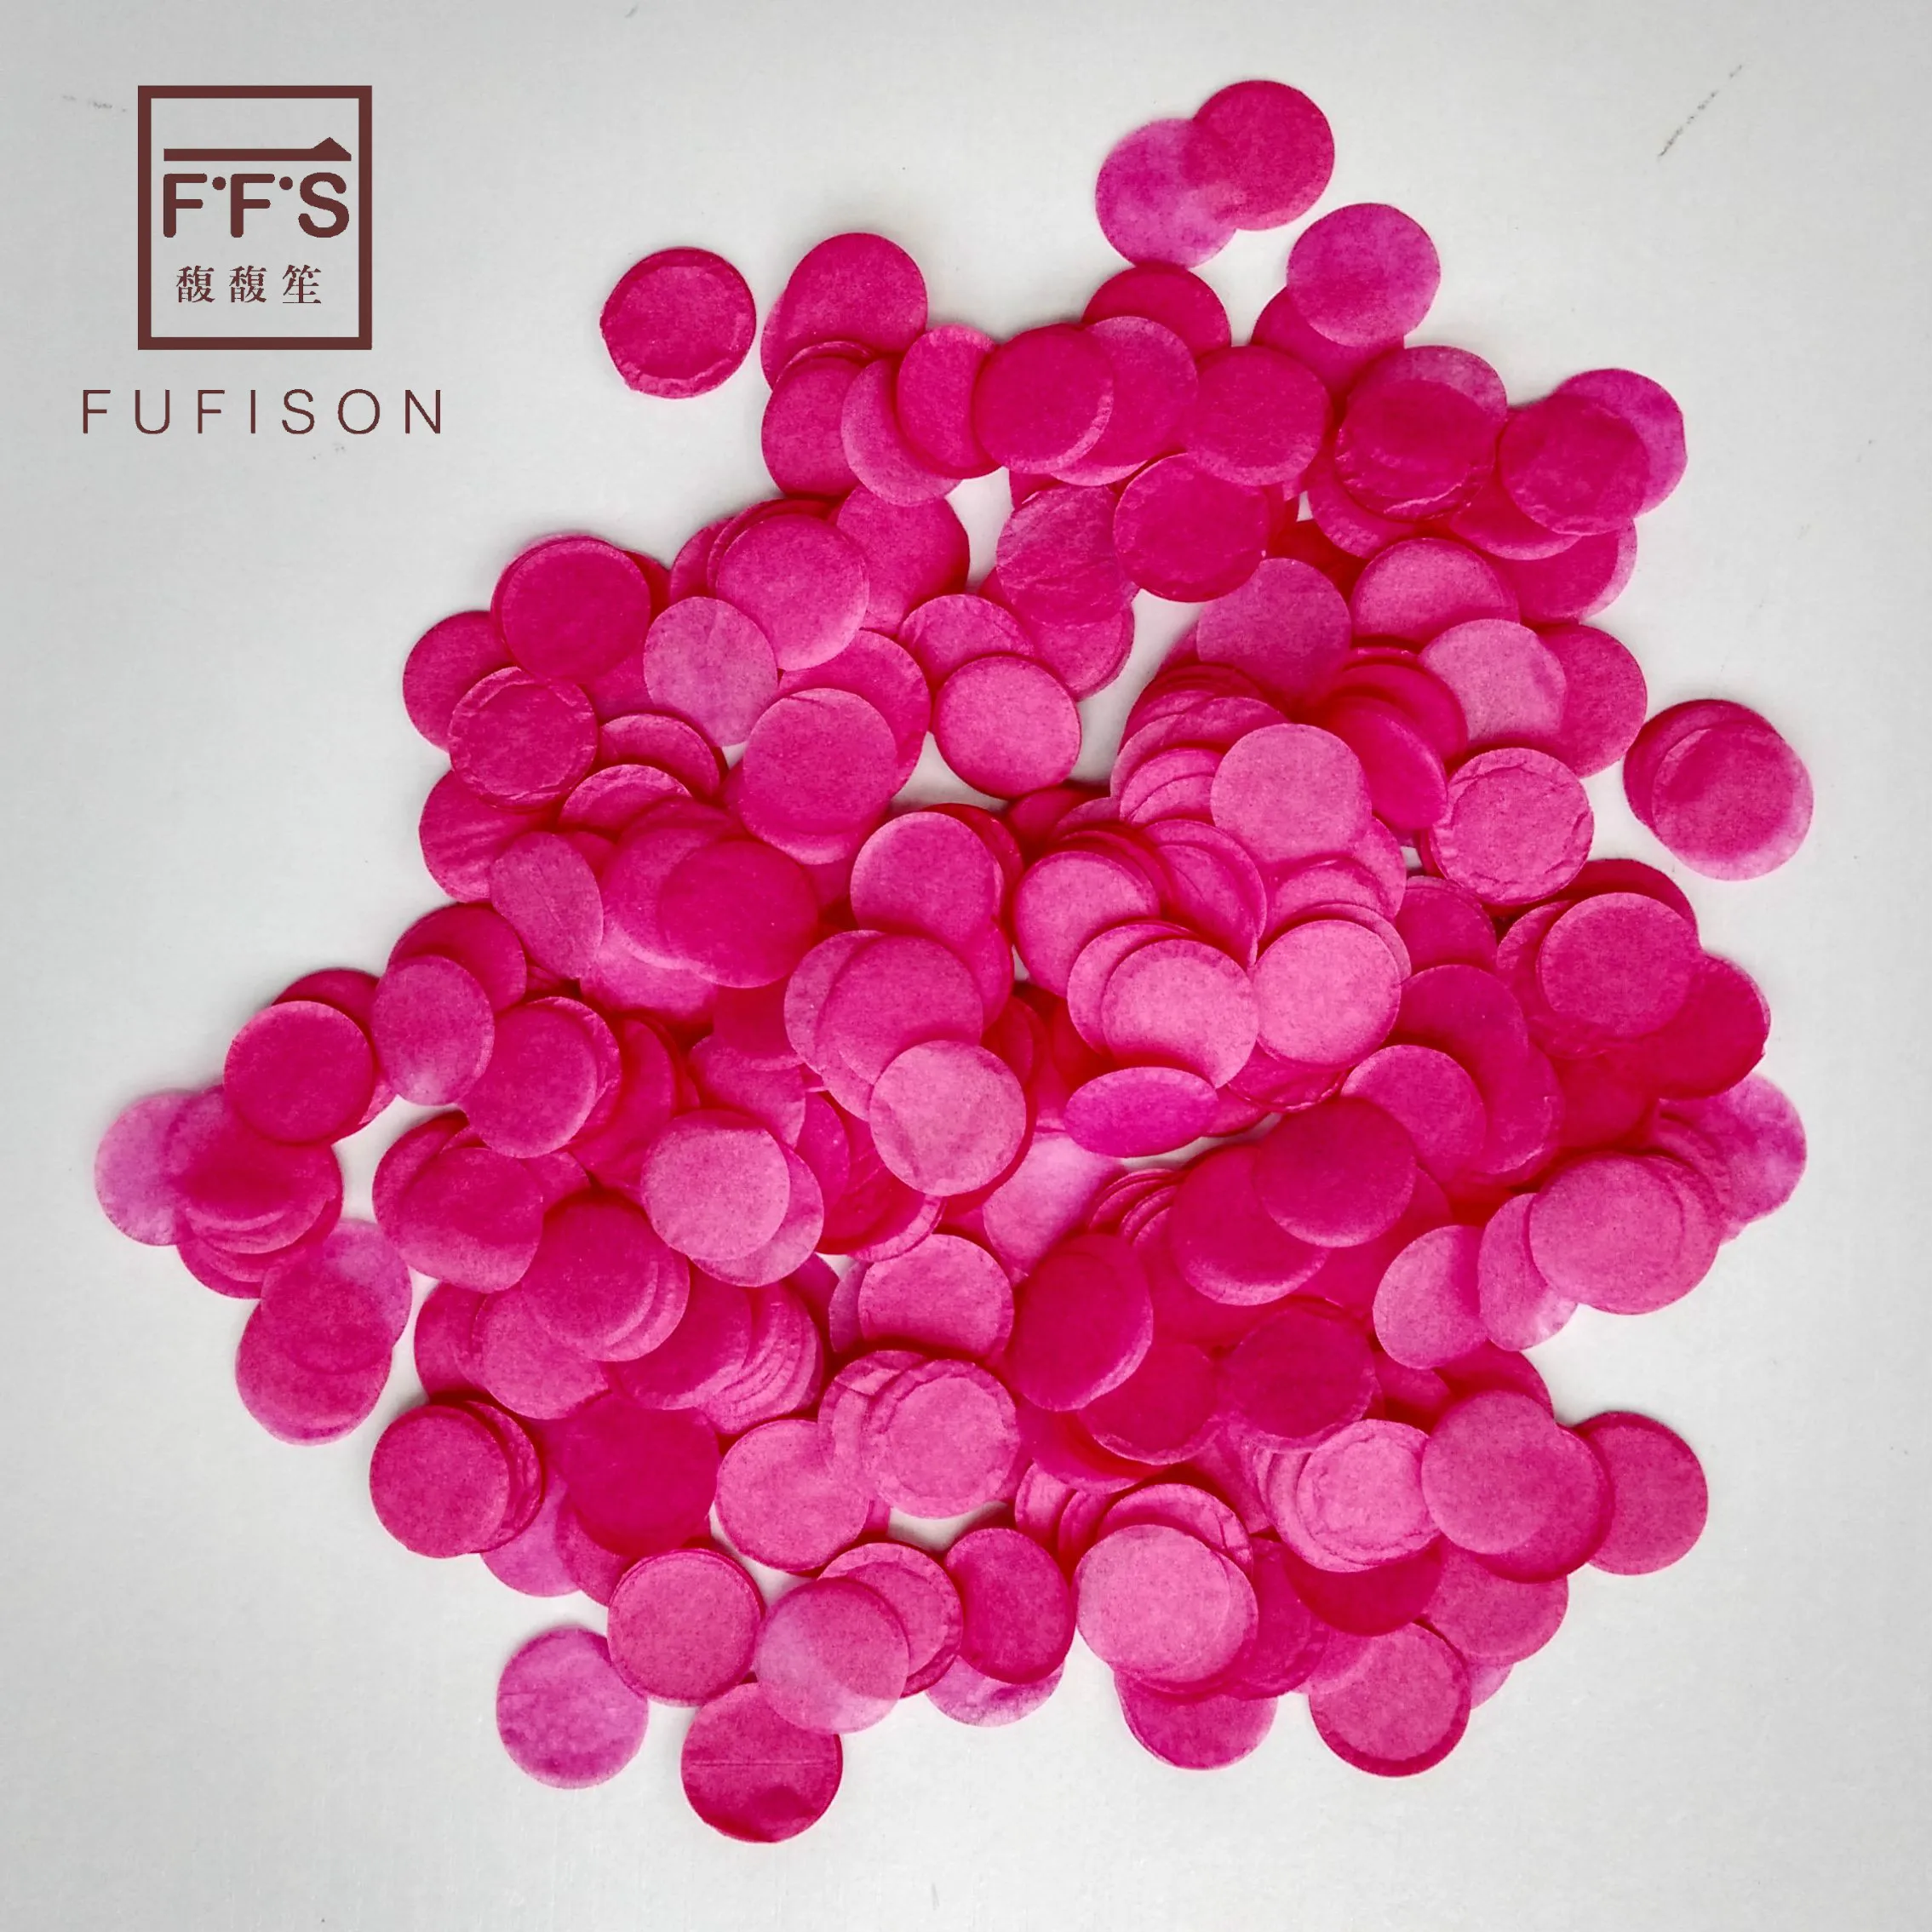 FFS 5 г(около 1000 шт) в пакете 1,6 см Круглые Конфетти из папиросной бумаги украшения свадебного стола - Цвет: Rose